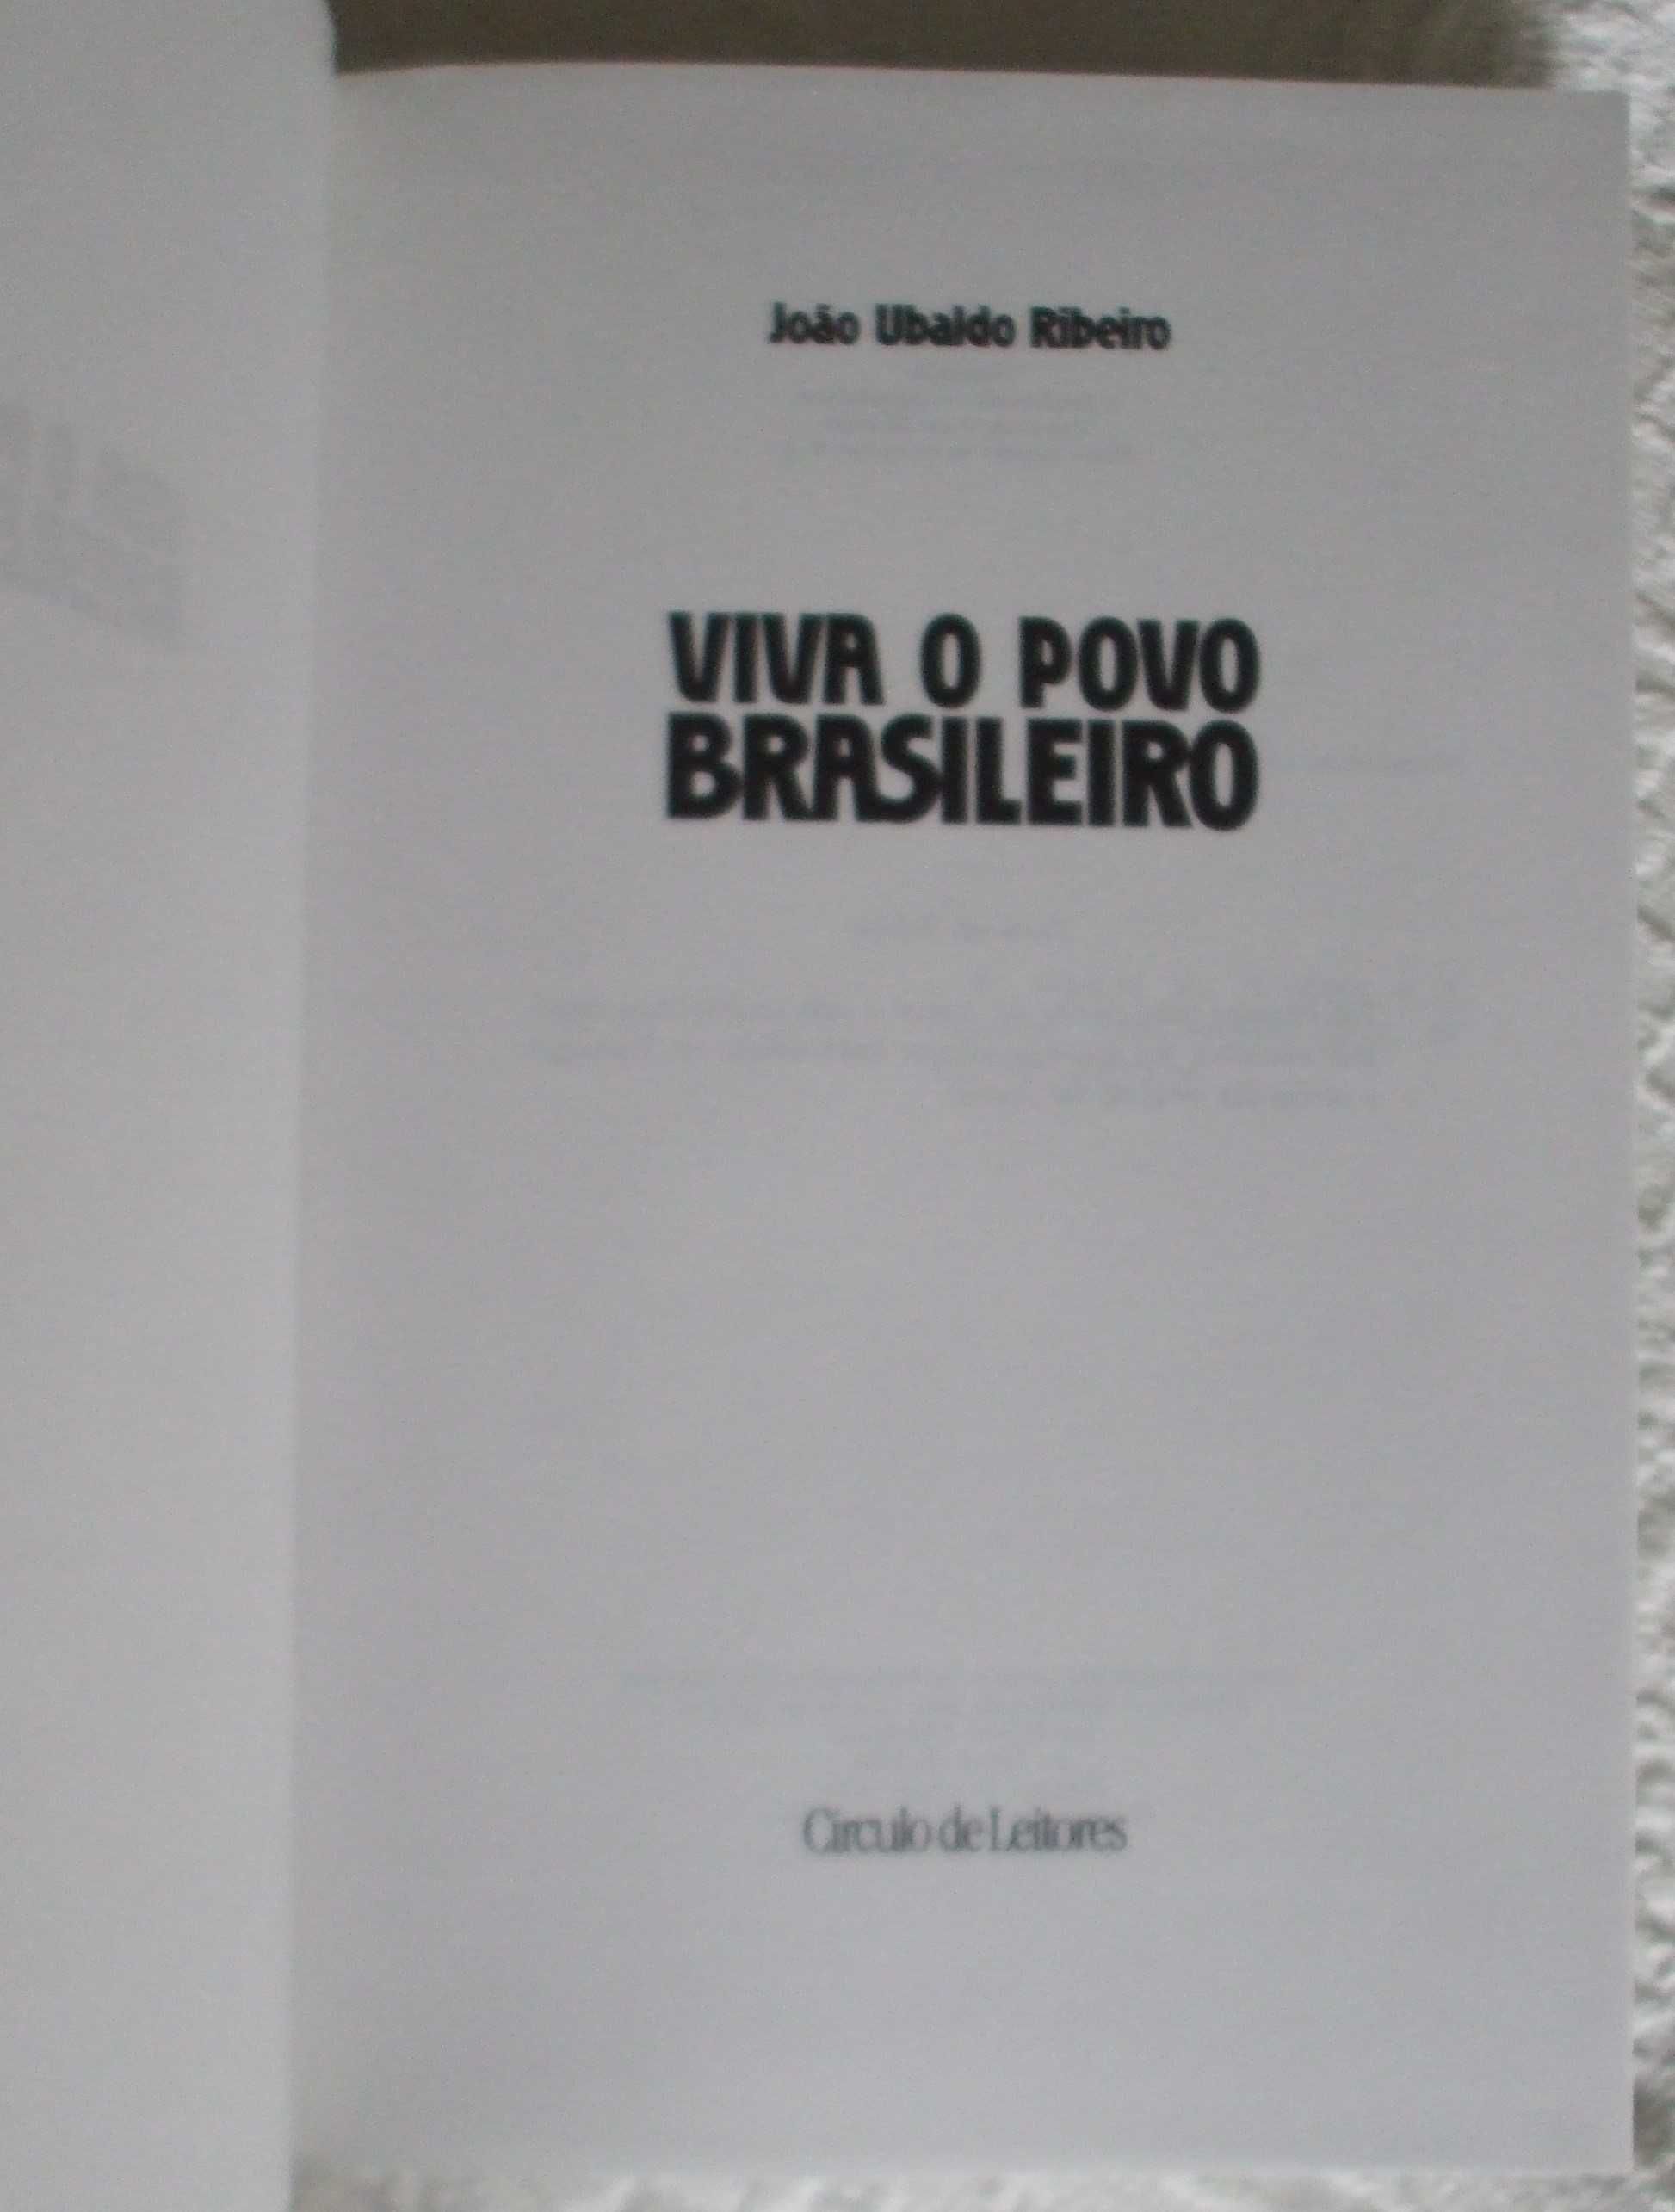 Viva o povo brasileiro, João Ubaldo Ribeiro